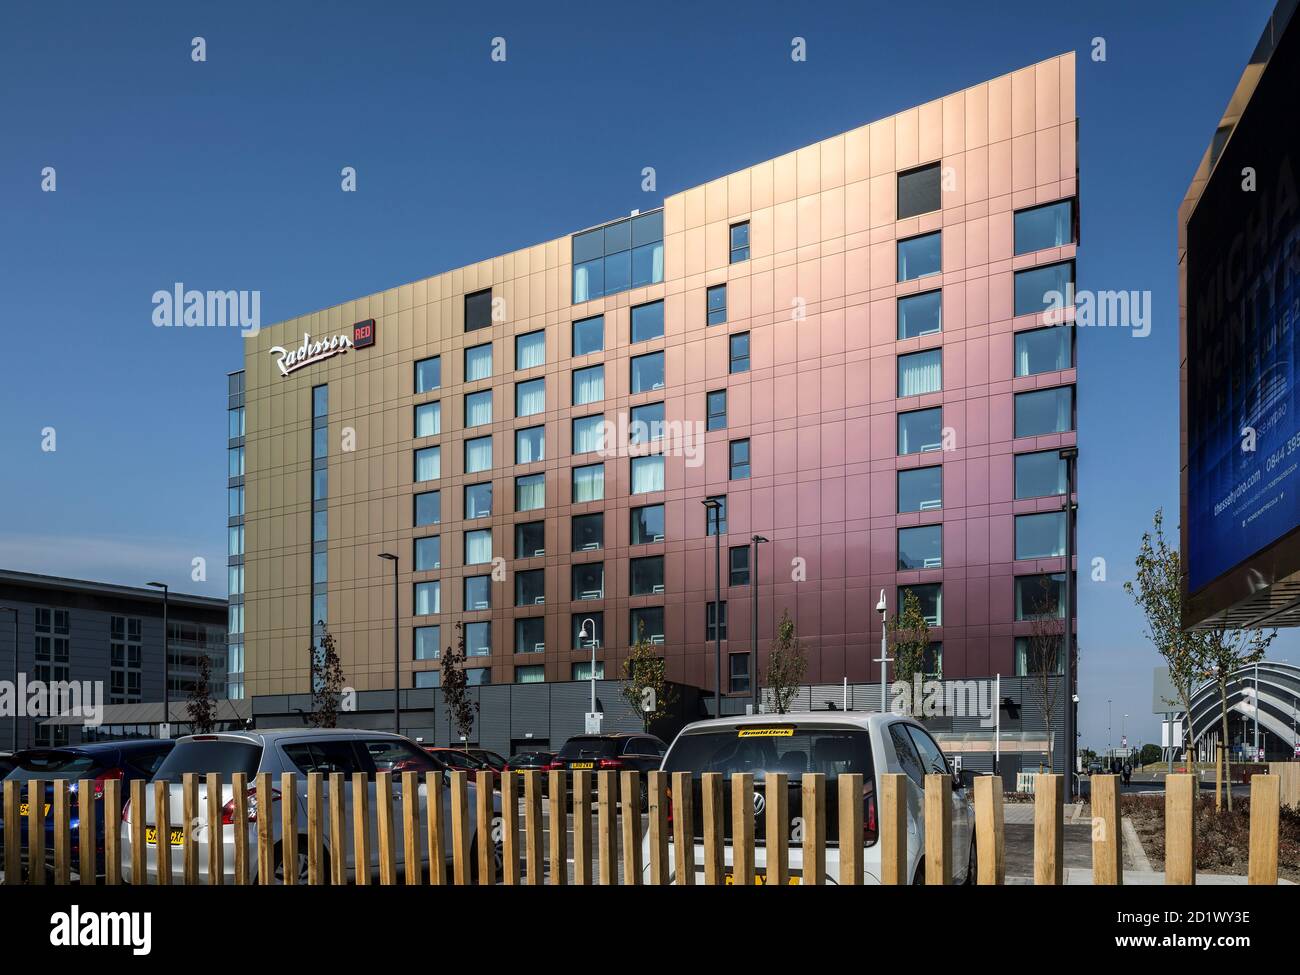 Außenansicht des Radisson RED Hotels mit 174 Zimmern, Glasgow, Schottland, Großbritannien. Stockfoto